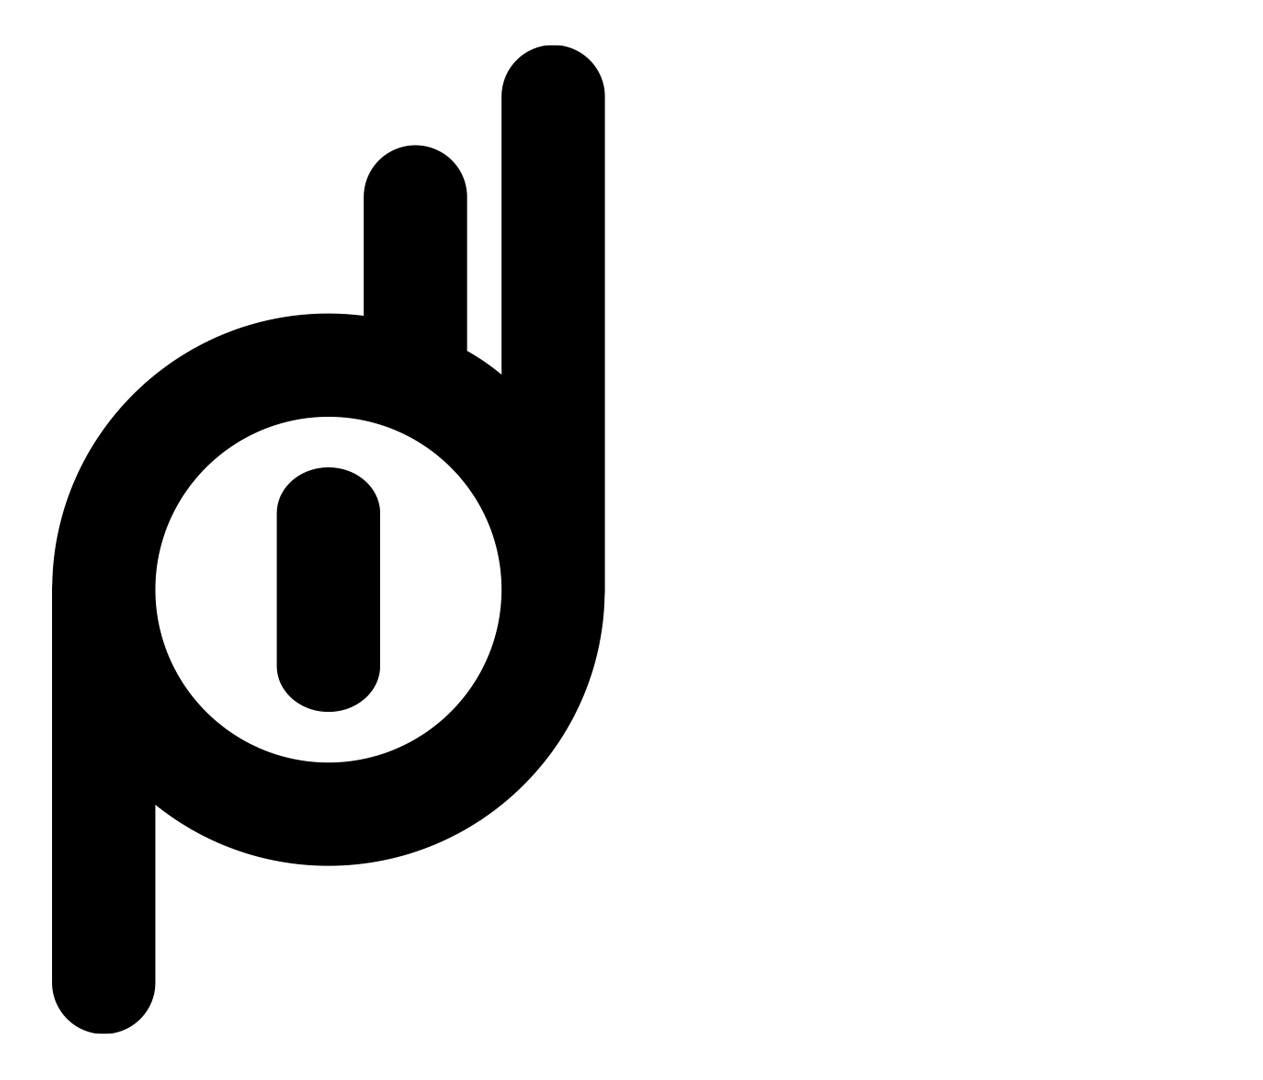 Premium Design Department black and white logo